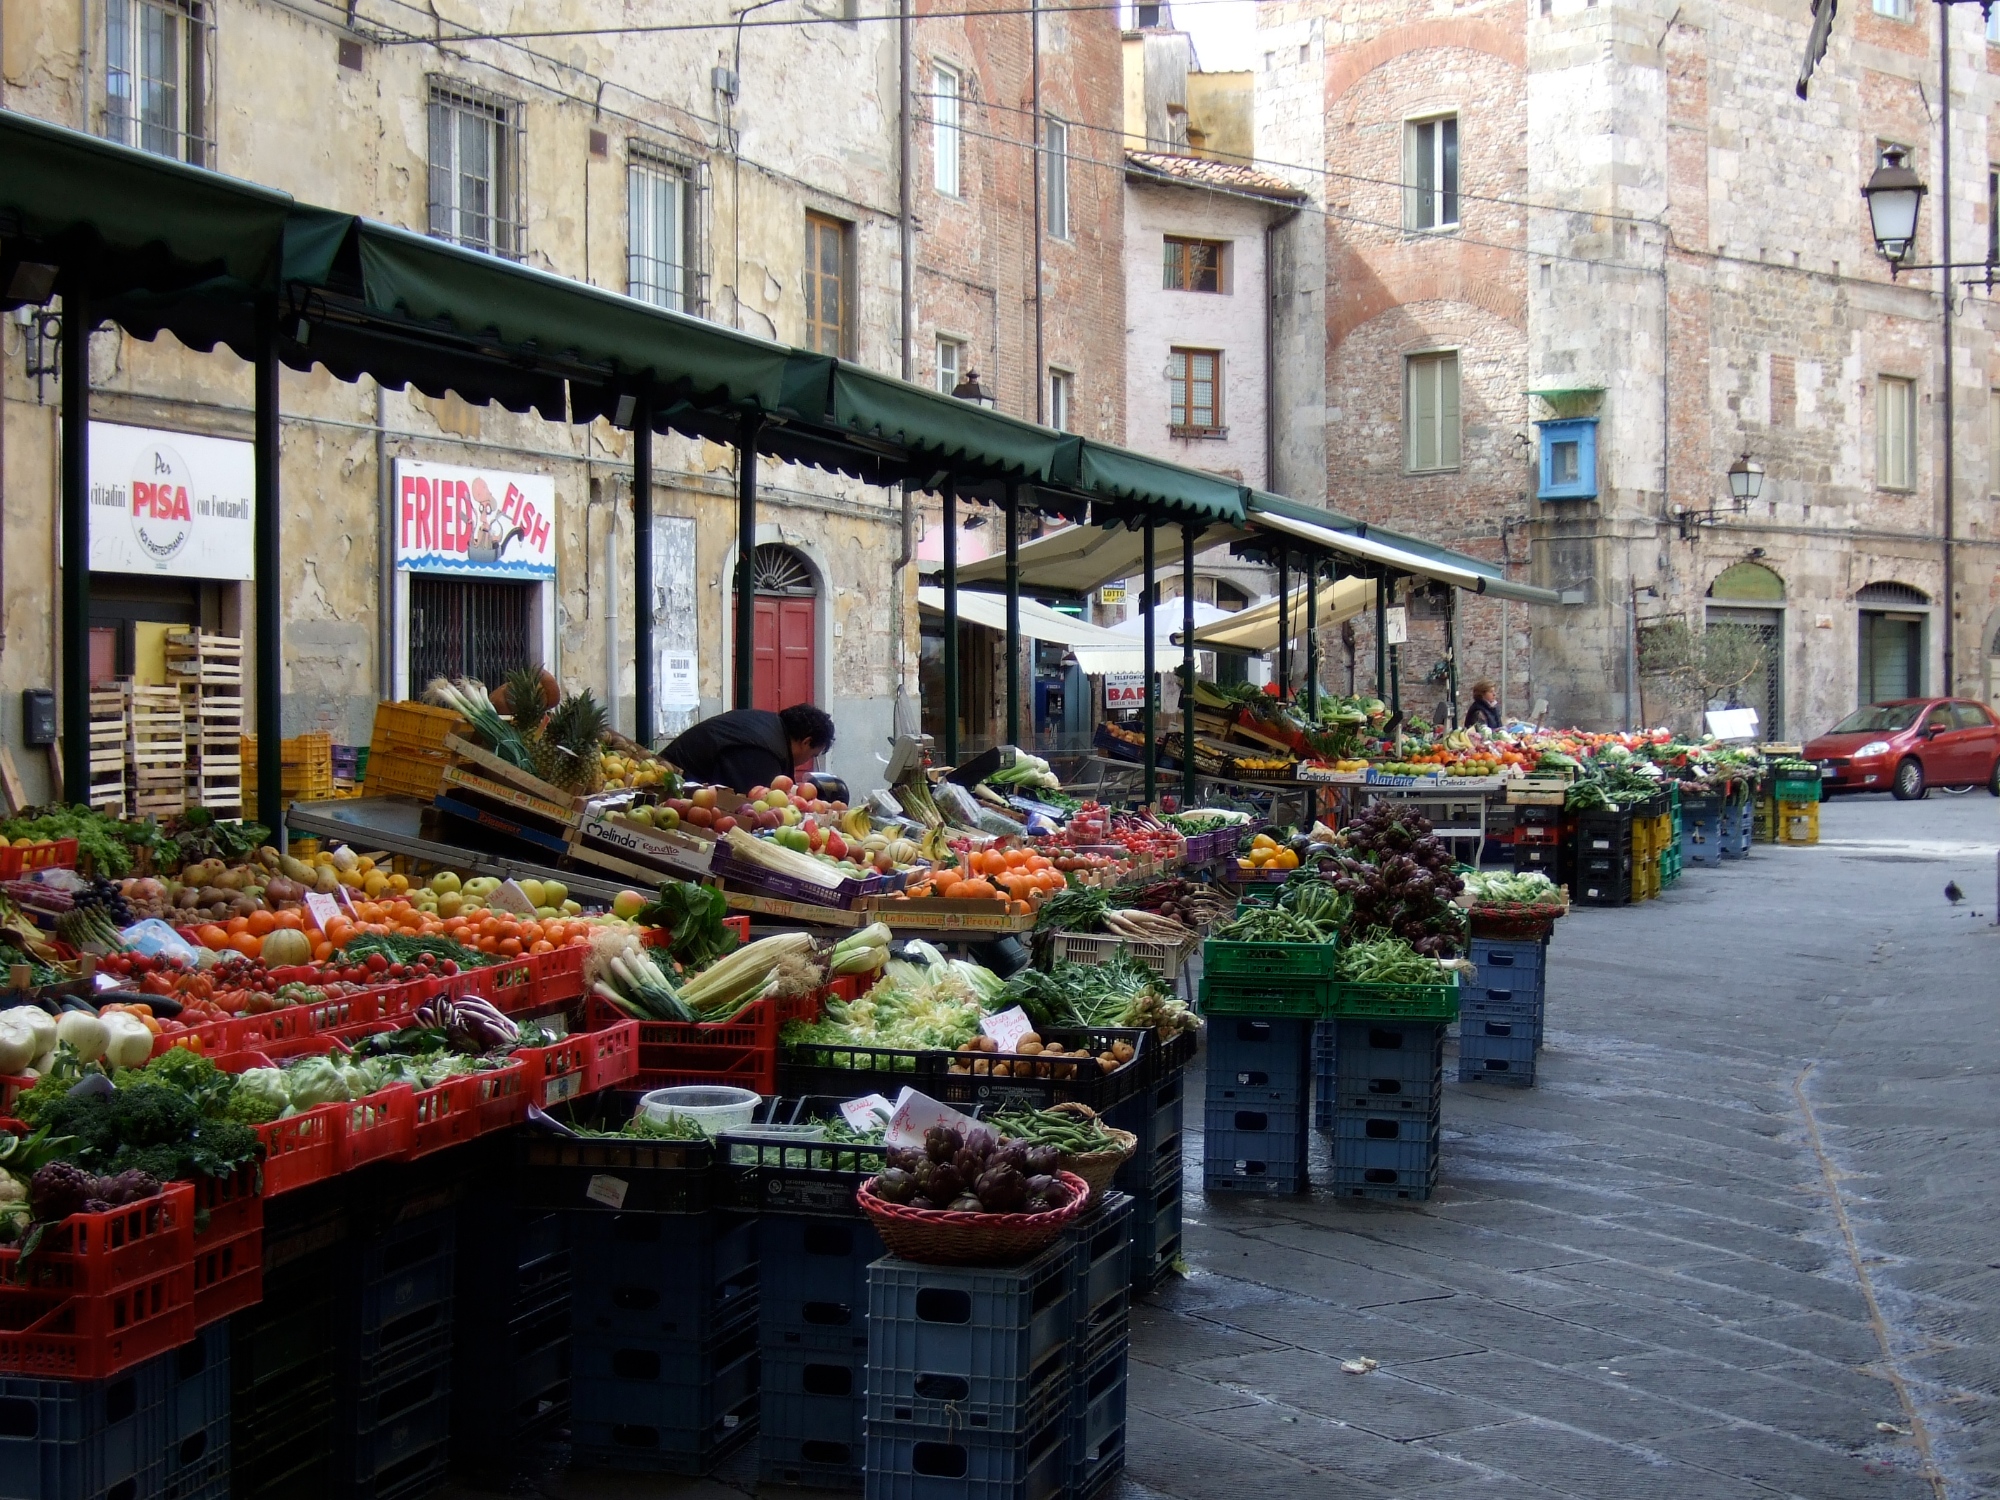 Le marché de la Piazza delle Vettovaglie